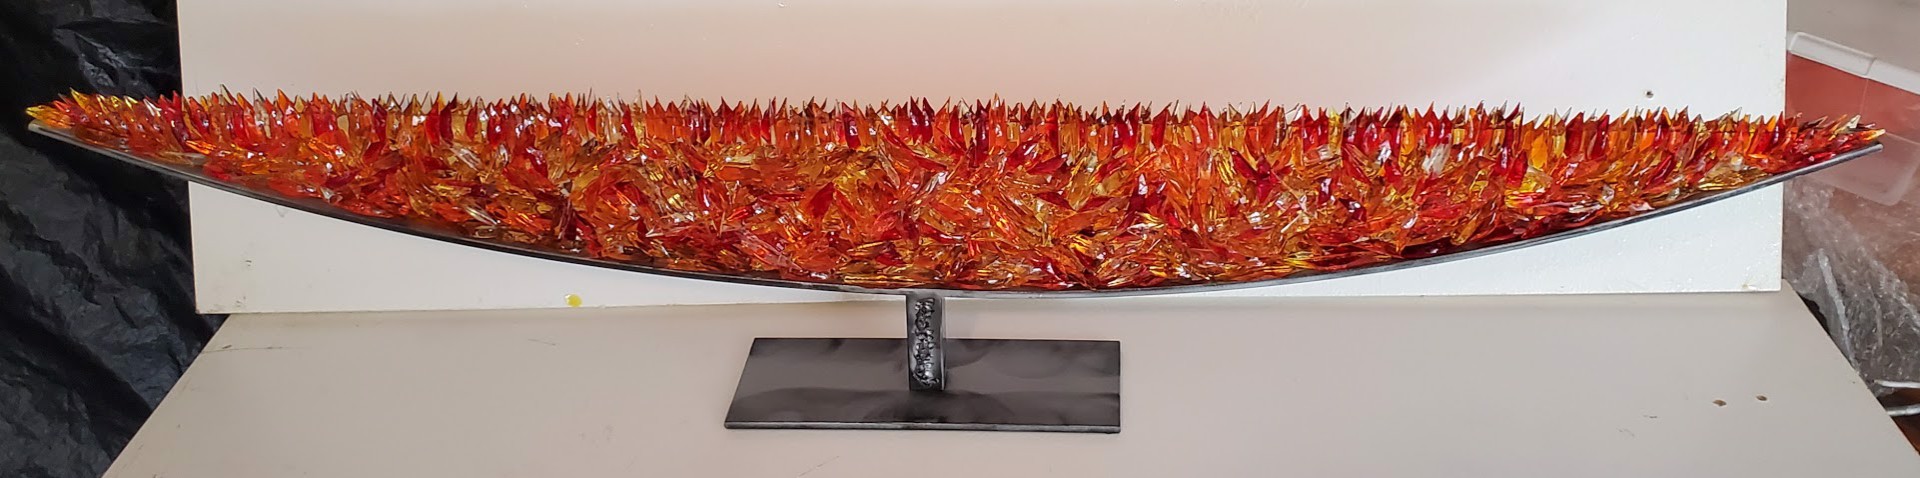 Red/Orange Boat by Reza Pishgahi